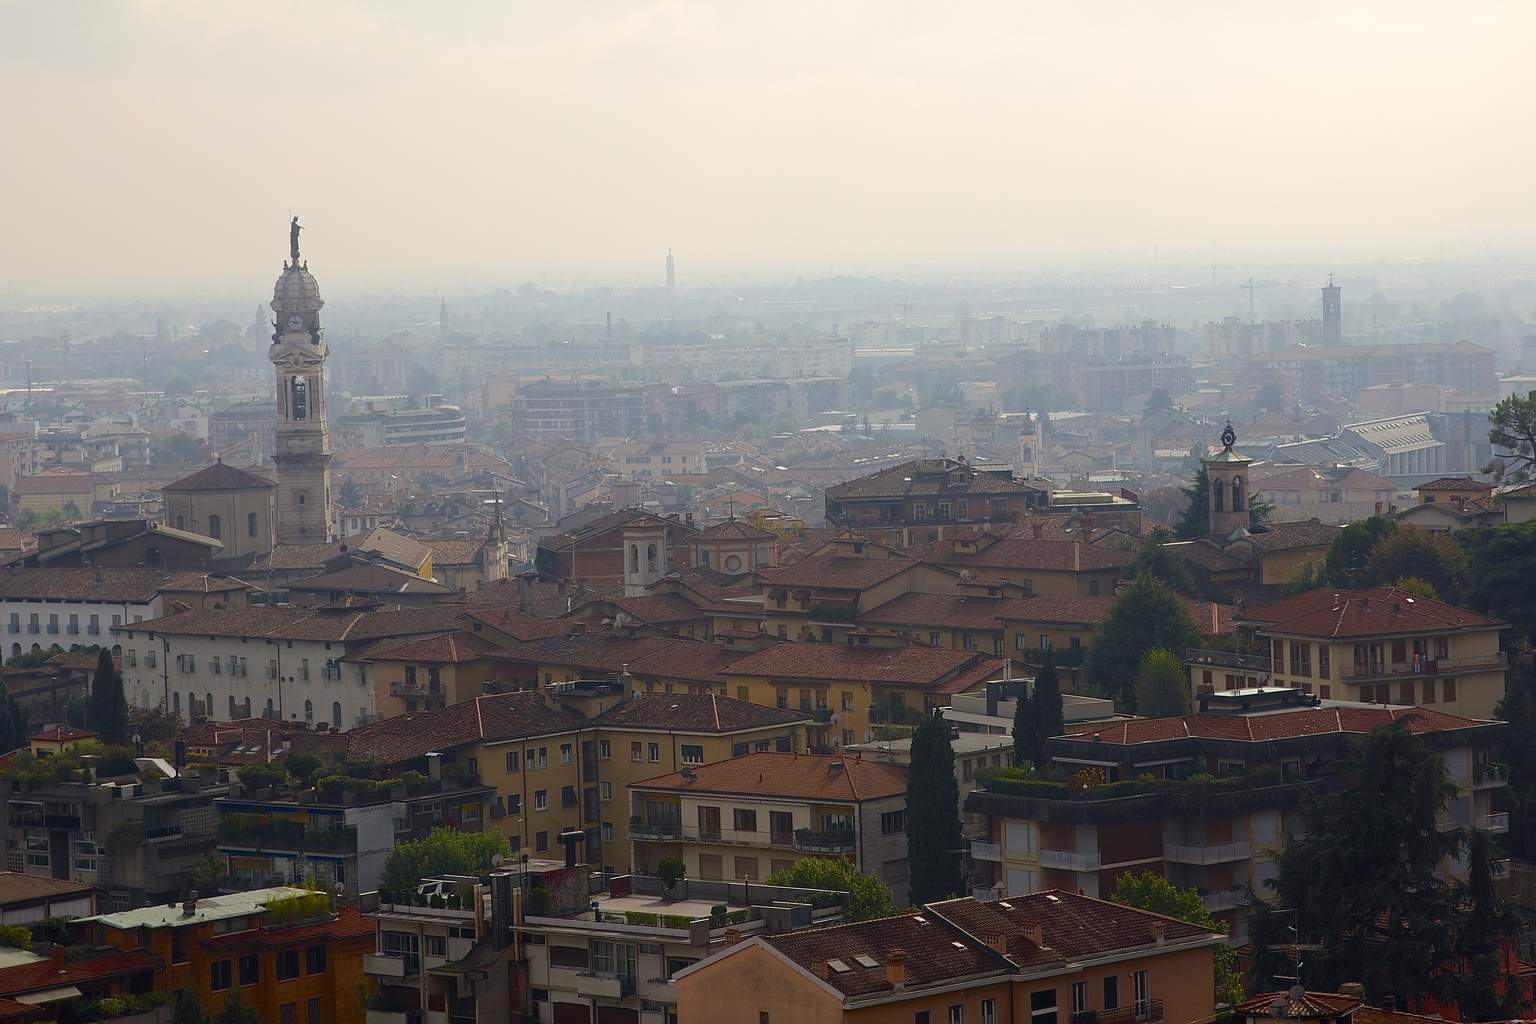 Visiting Bergamo (Favorite Day Trips from Milan)